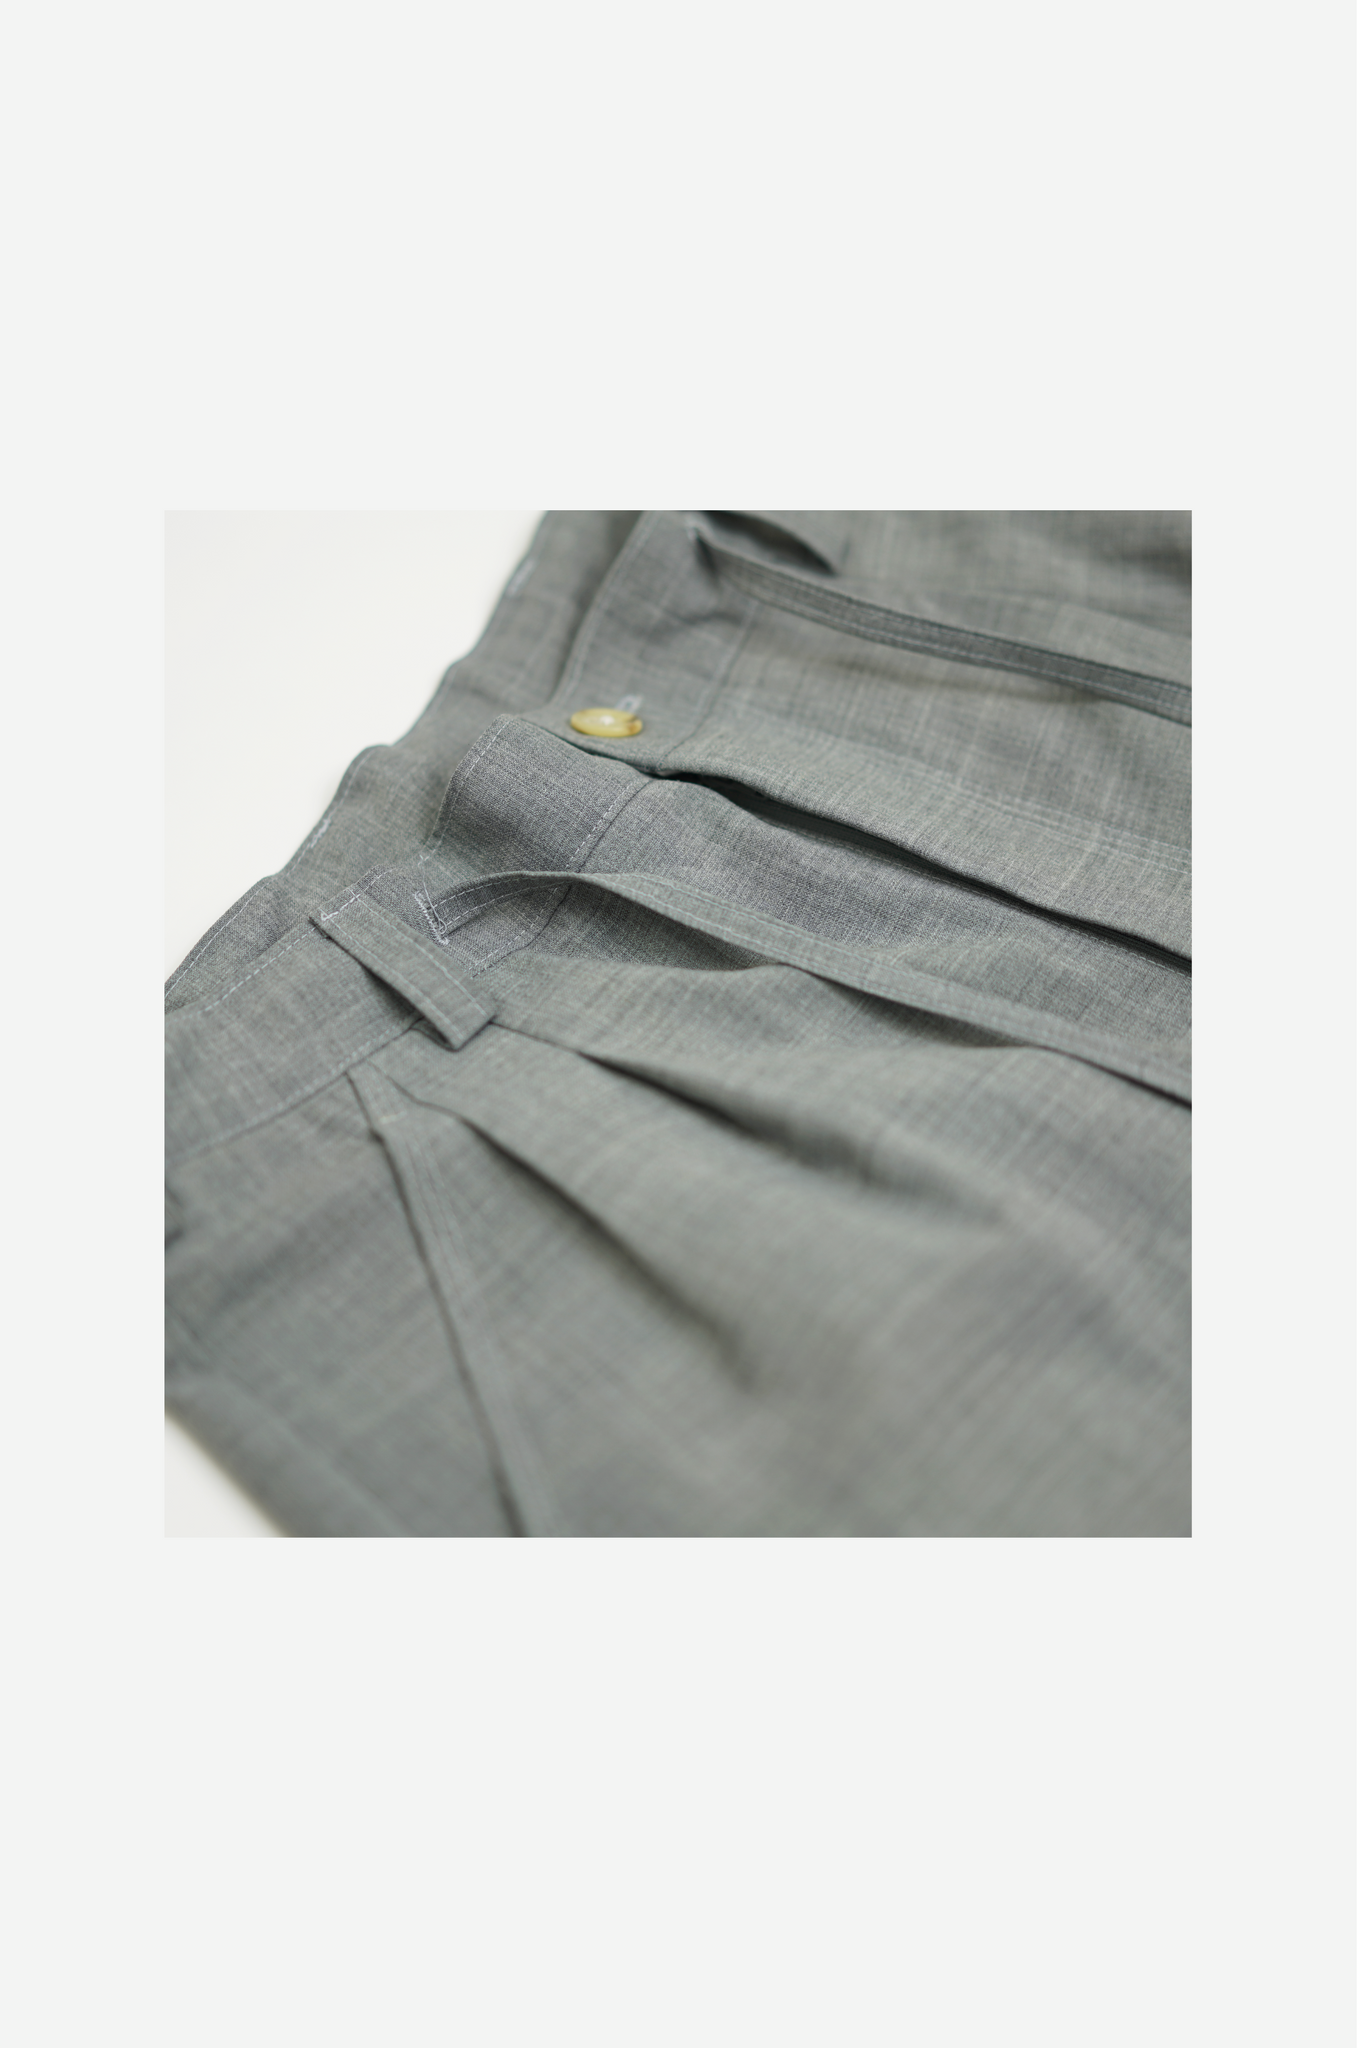 Dual wide pants “Grey”